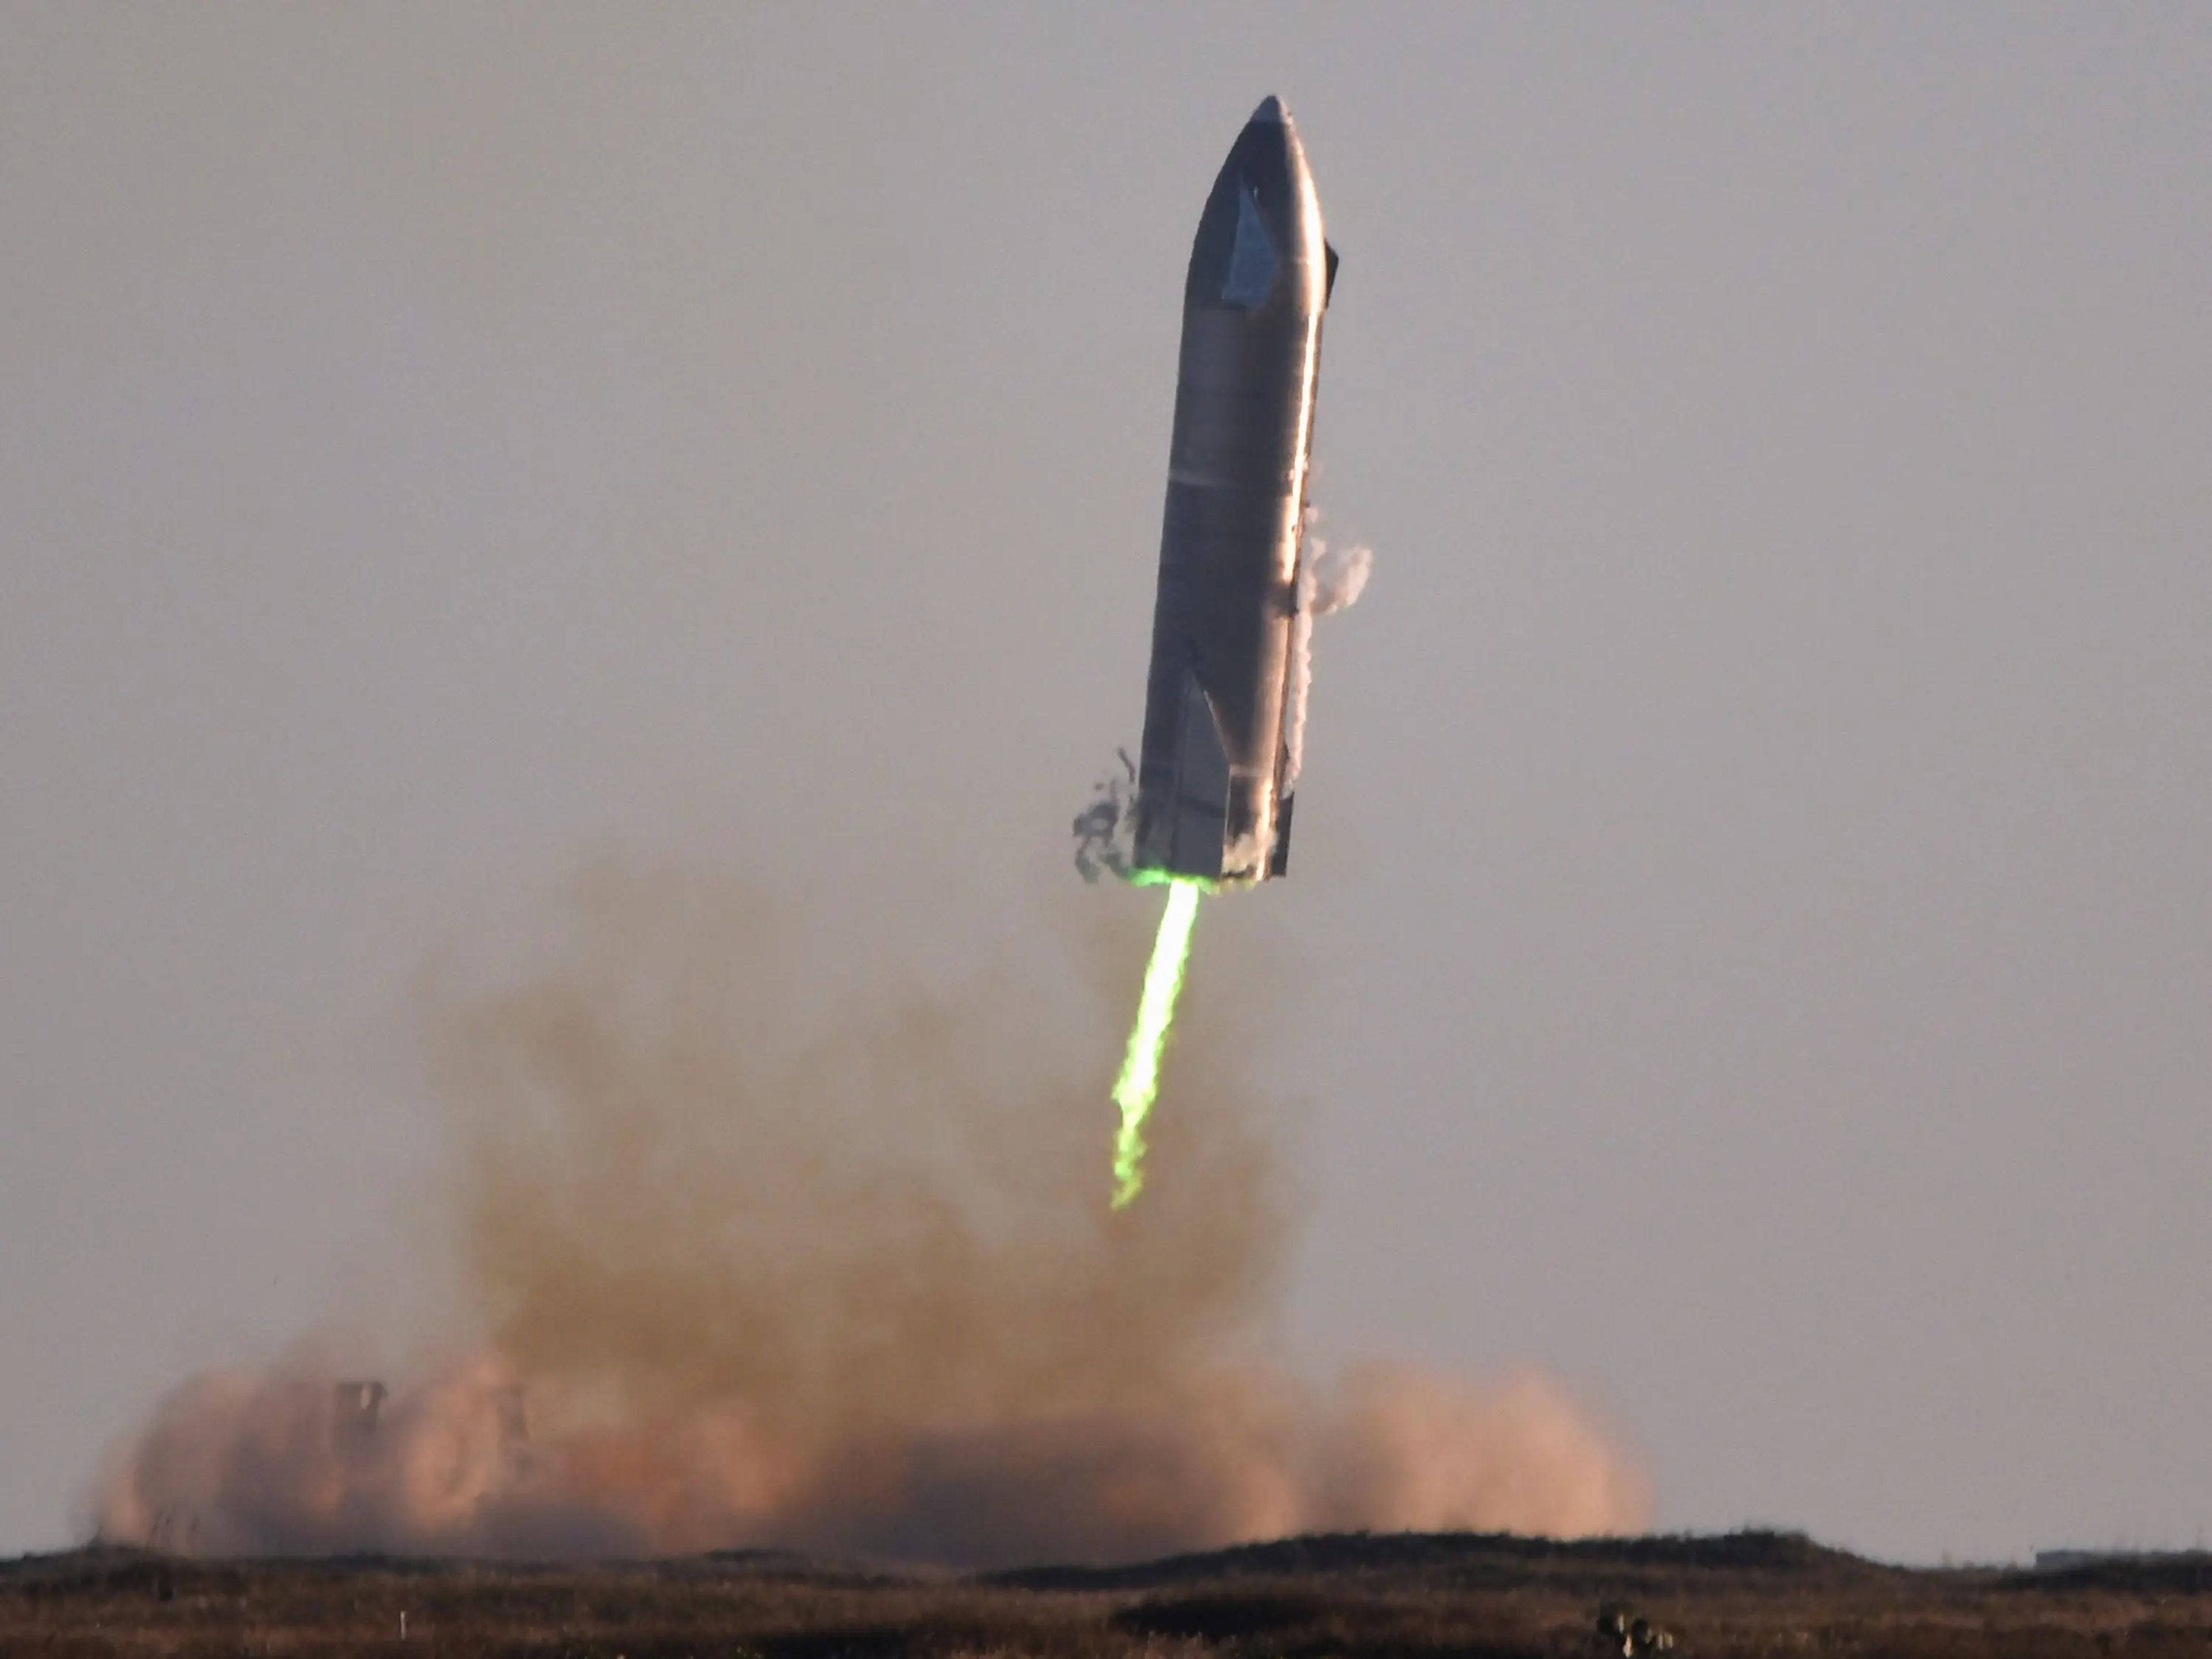 El prototipo de nave estelar SN8 de SpaceX intenta aterrizar en las instalaciones de desarrollo de la compañía en Boca Chica, Texas, el 9 de diciembre de 2020.